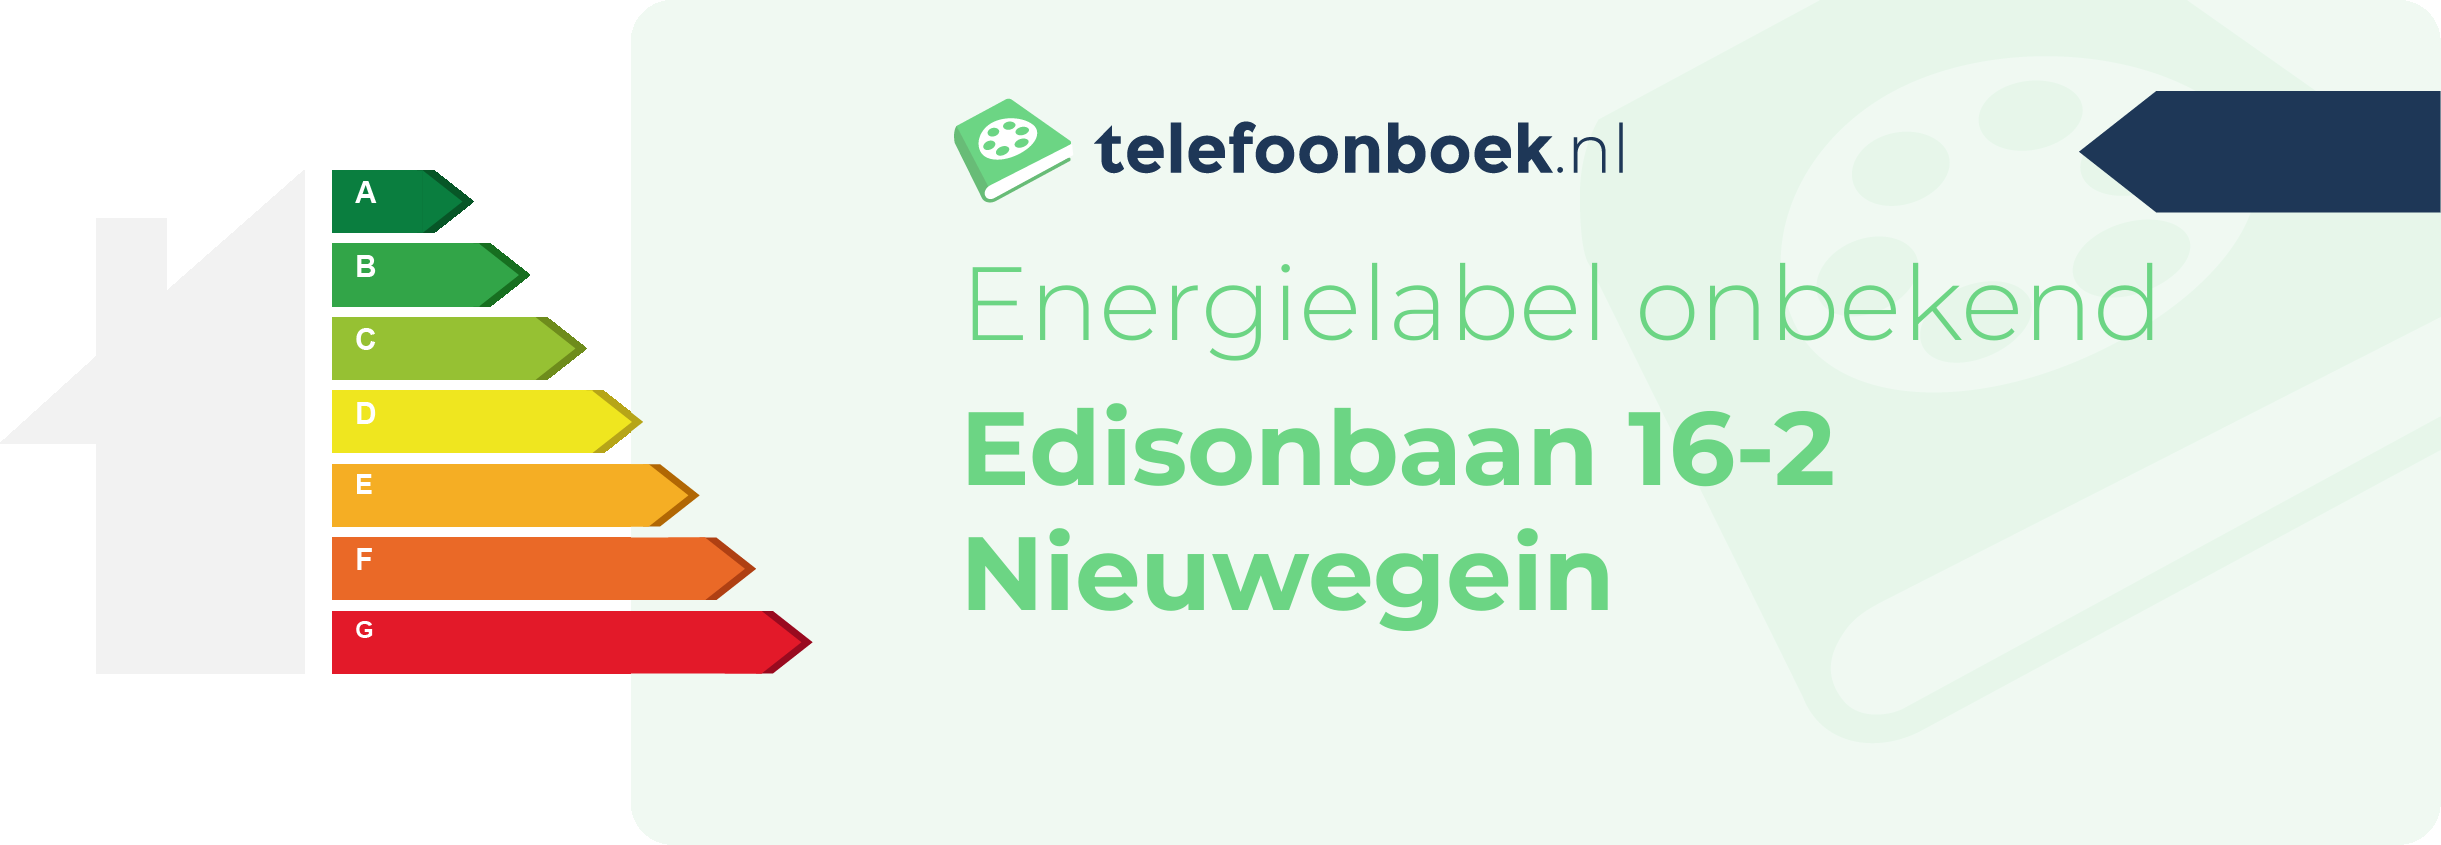 Energielabel Edisonbaan 16-2 Nieuwegein